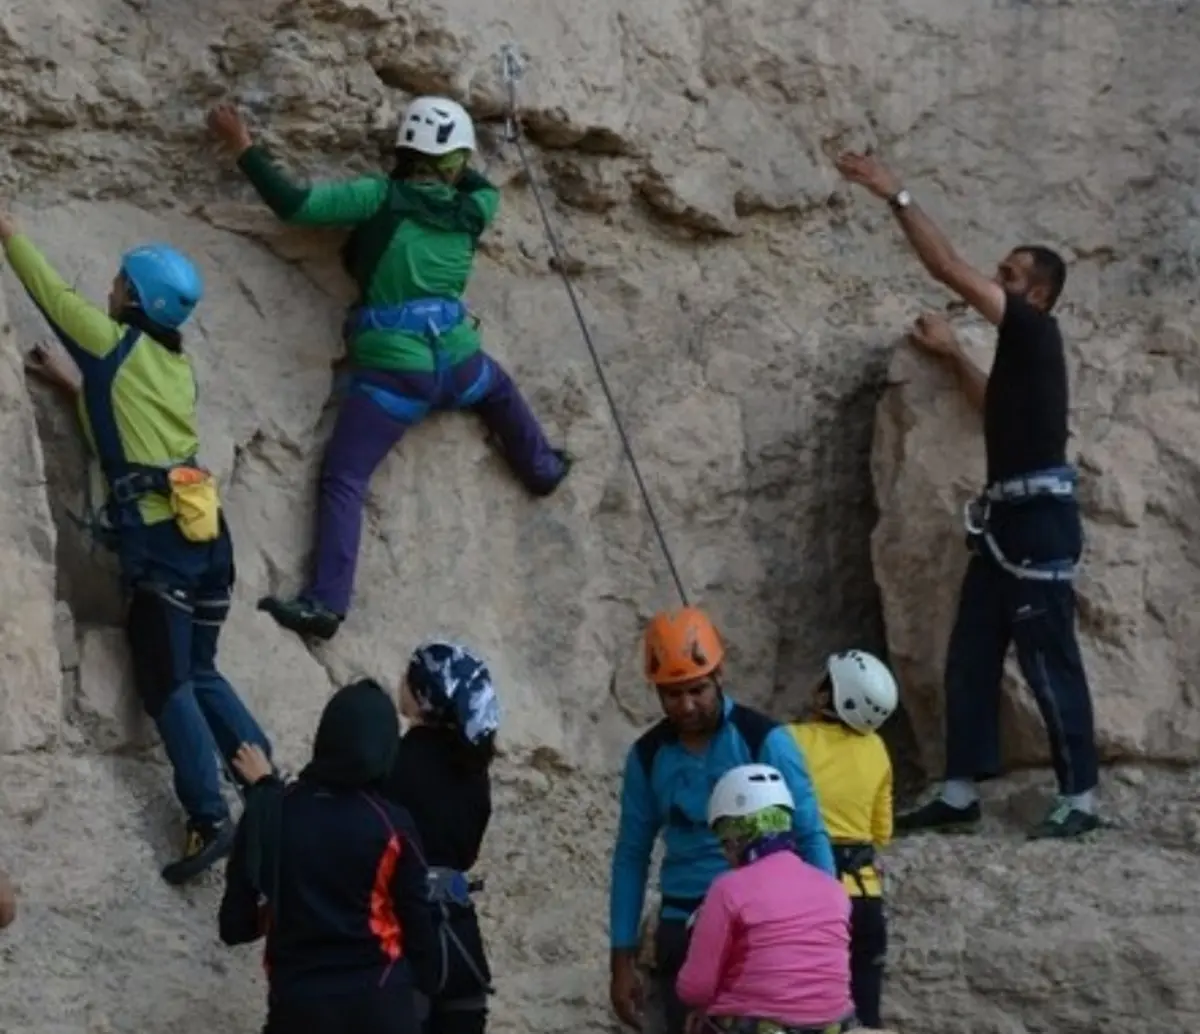  کوهنوردی اصفهان  | محدودیت برای سنگنوردی بانوان  